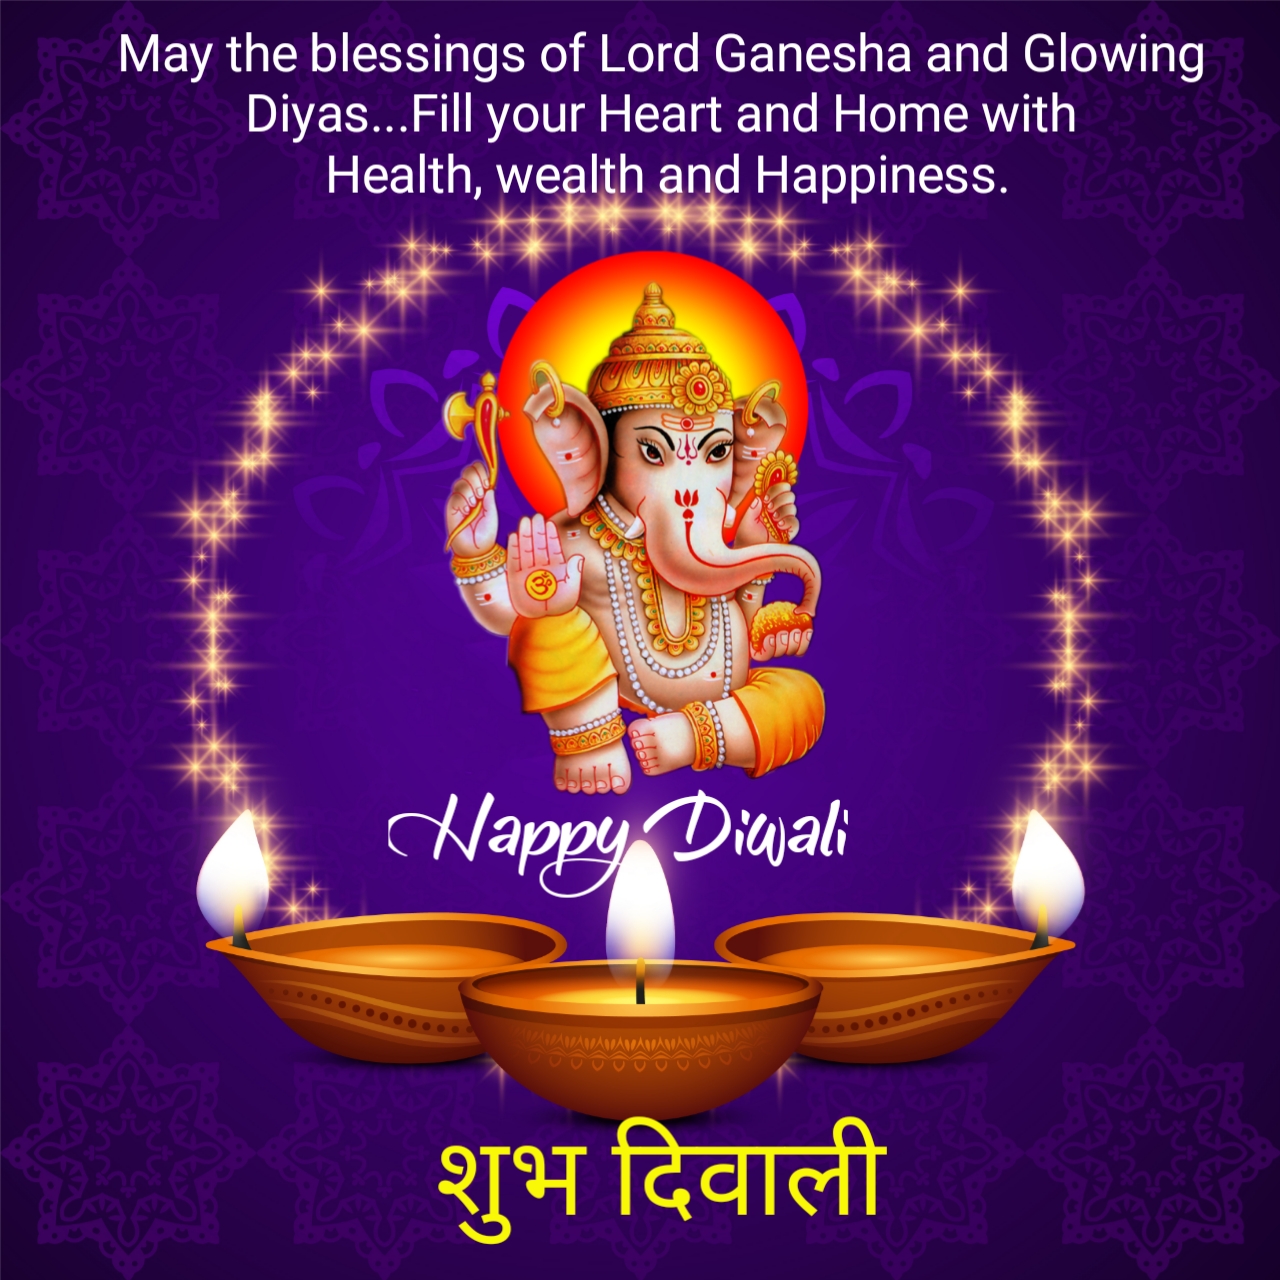 happy diwali wish greeting in hindi image | QUOTES GARDEN TELUGU ...